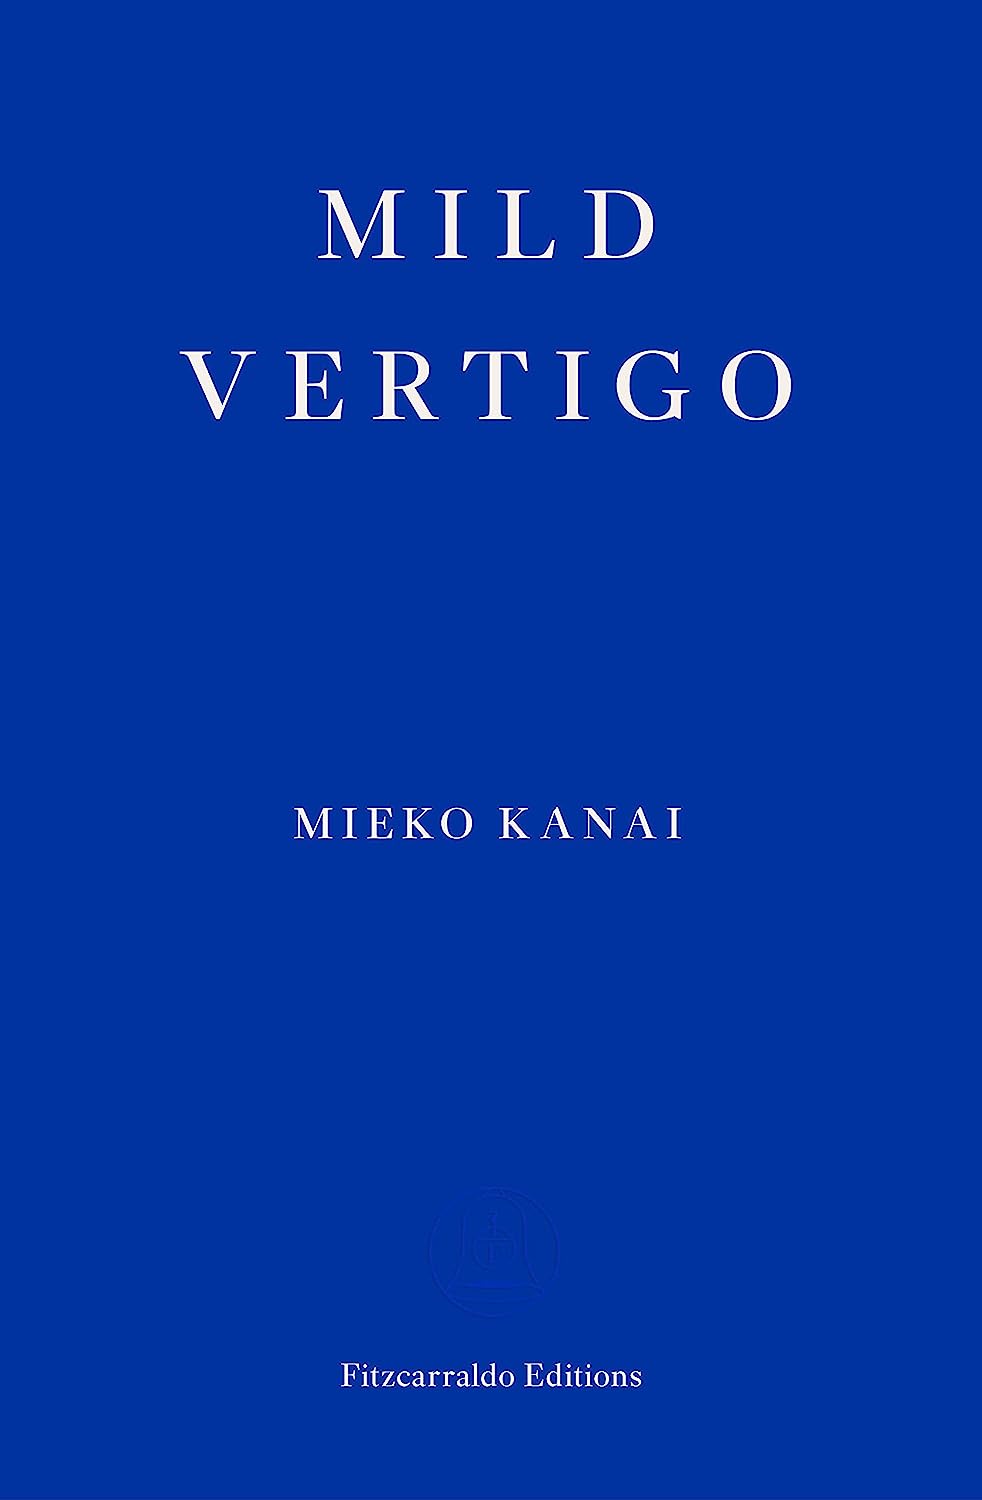 Mild Vertigo by Mieko Kania